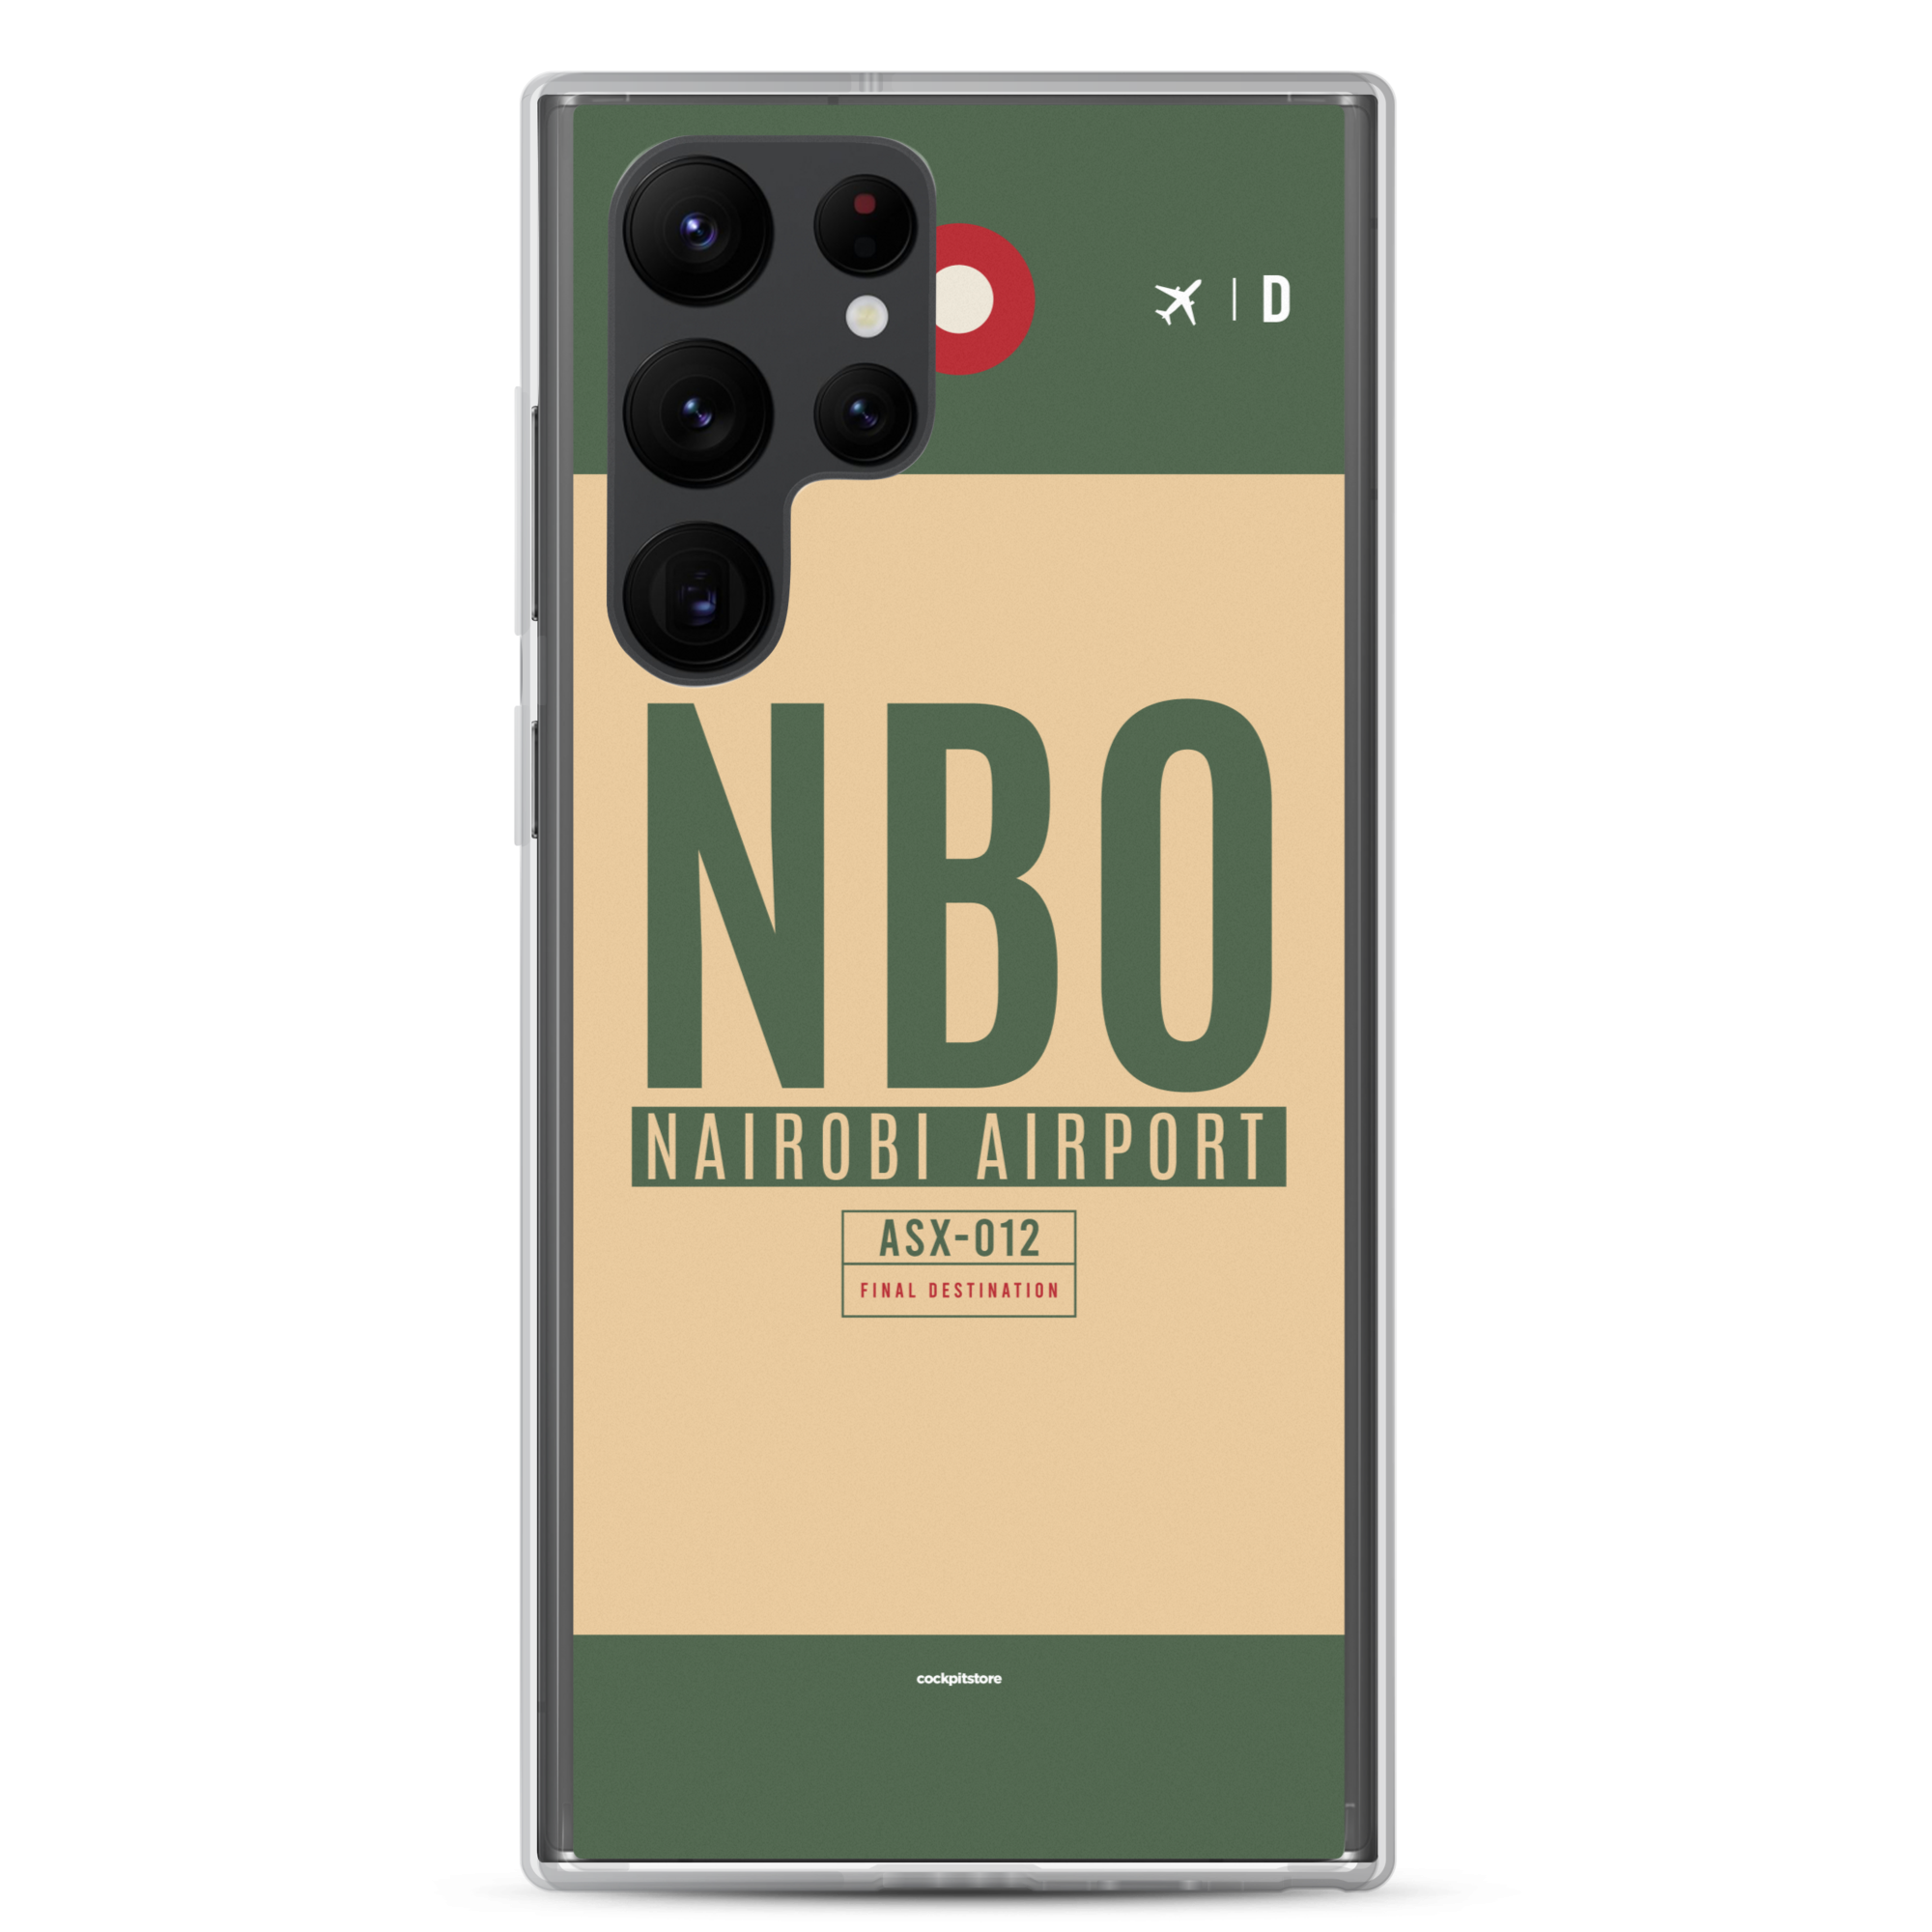 NBO - Nairobi Samsung-Handyhülle mit Flughafencode